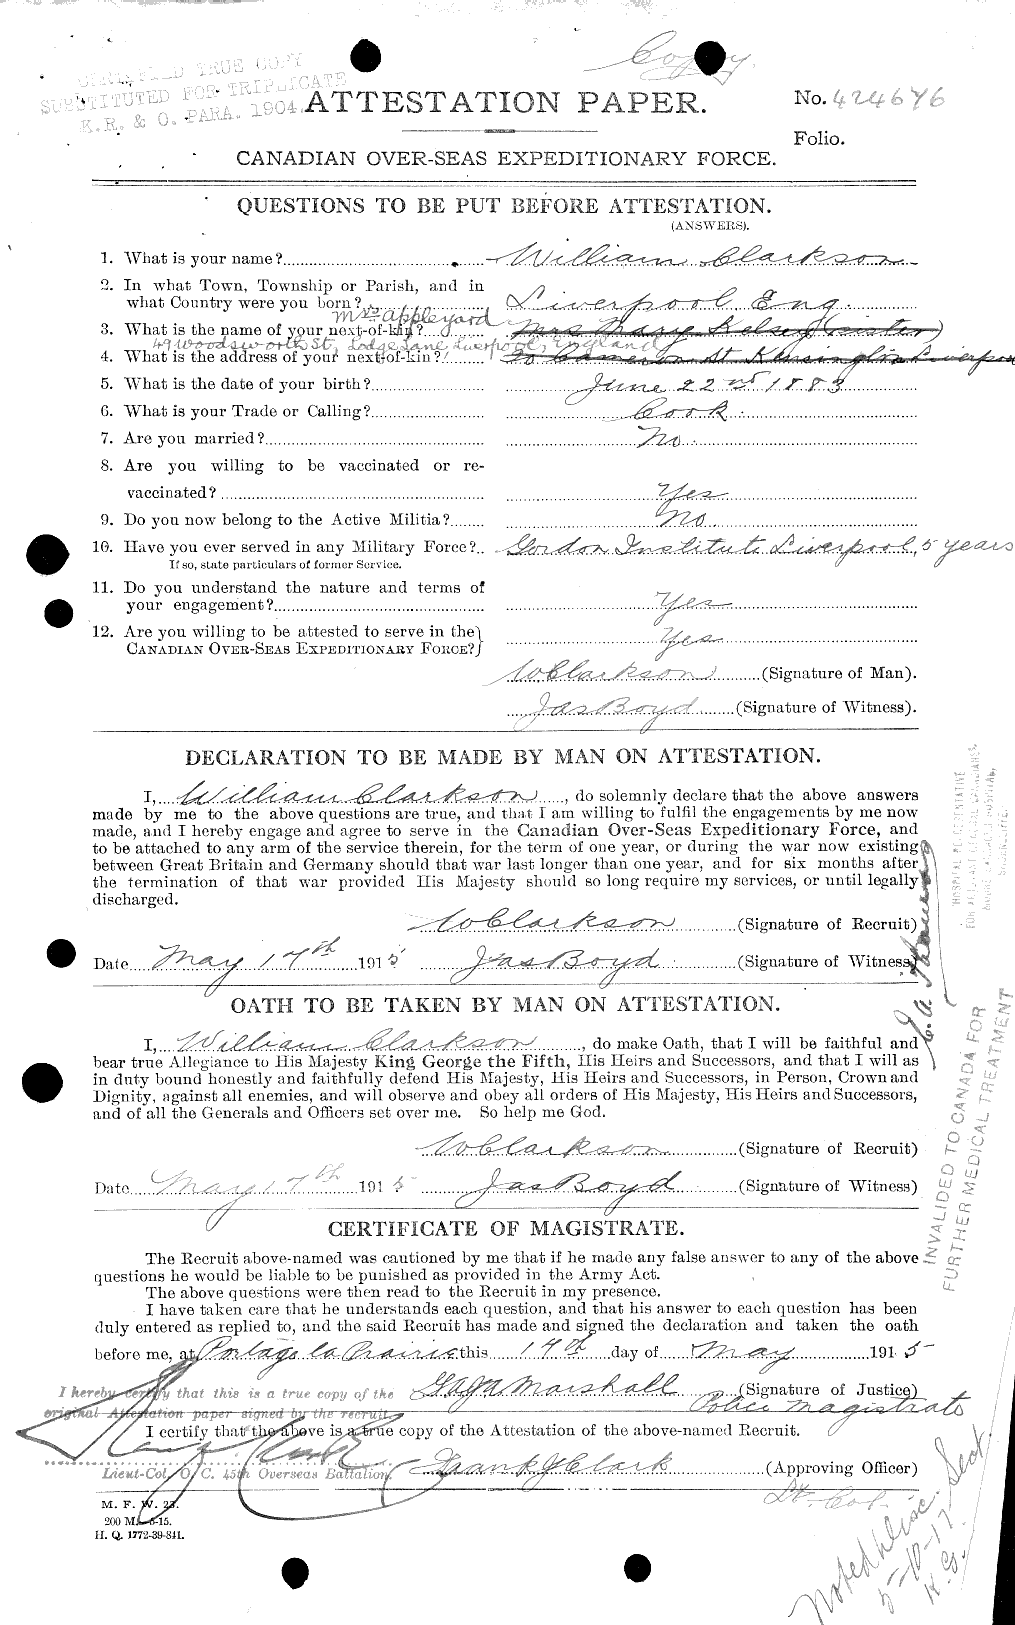 Dossiers du Personnel de la Première Guerre mondiale - CEC 019017a